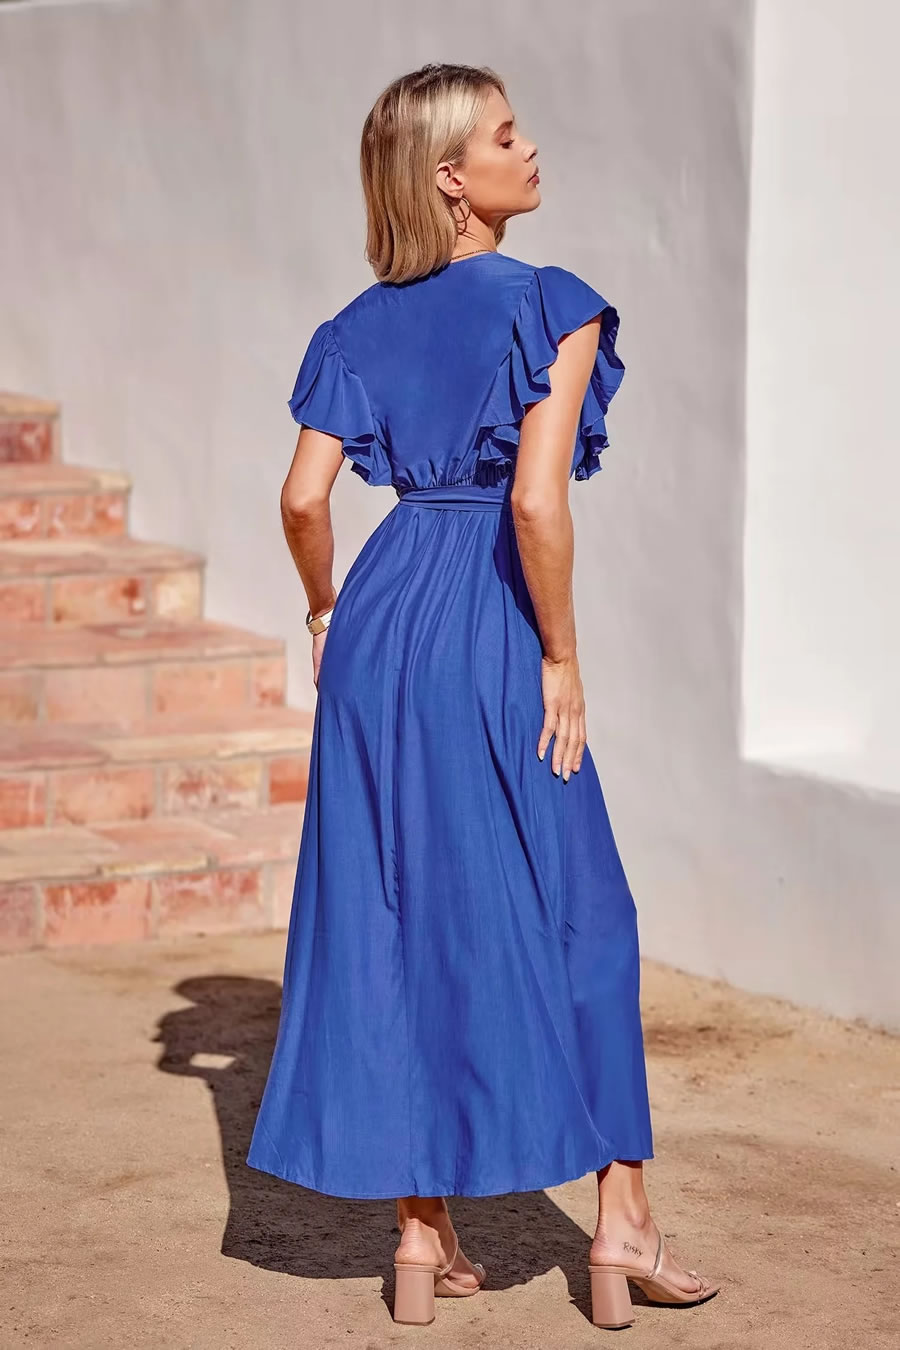 Fashion Klein Blue Polyester Lace Tie Dress,Long Dress